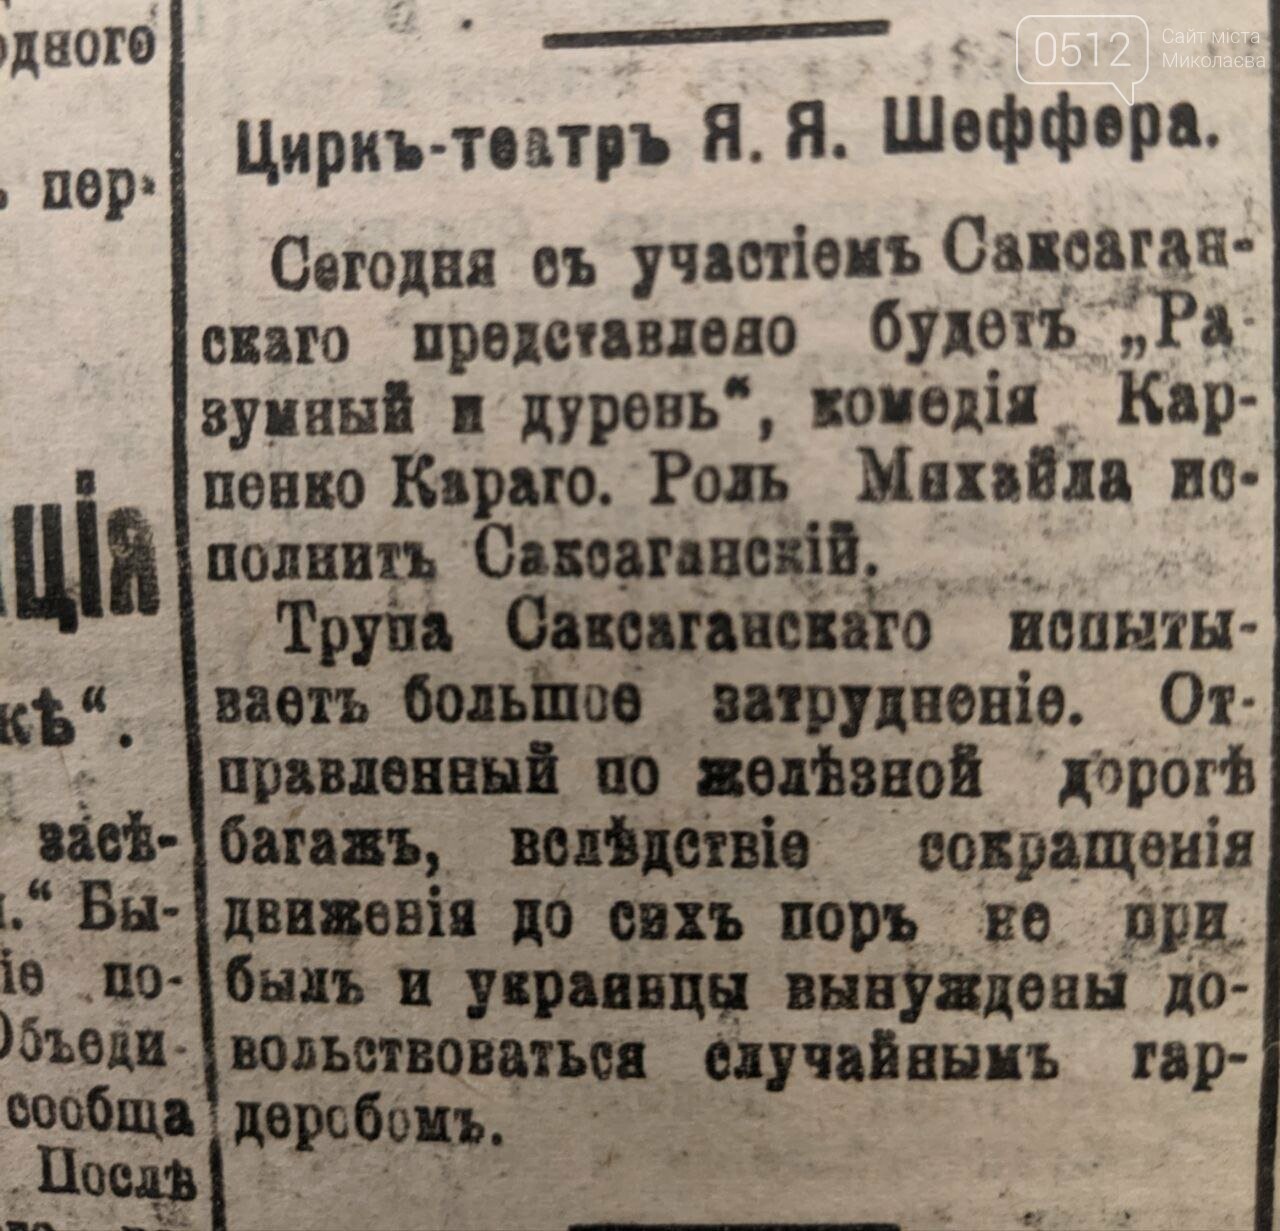 Николаевская газета, випуск від 23 лютого 1923 року